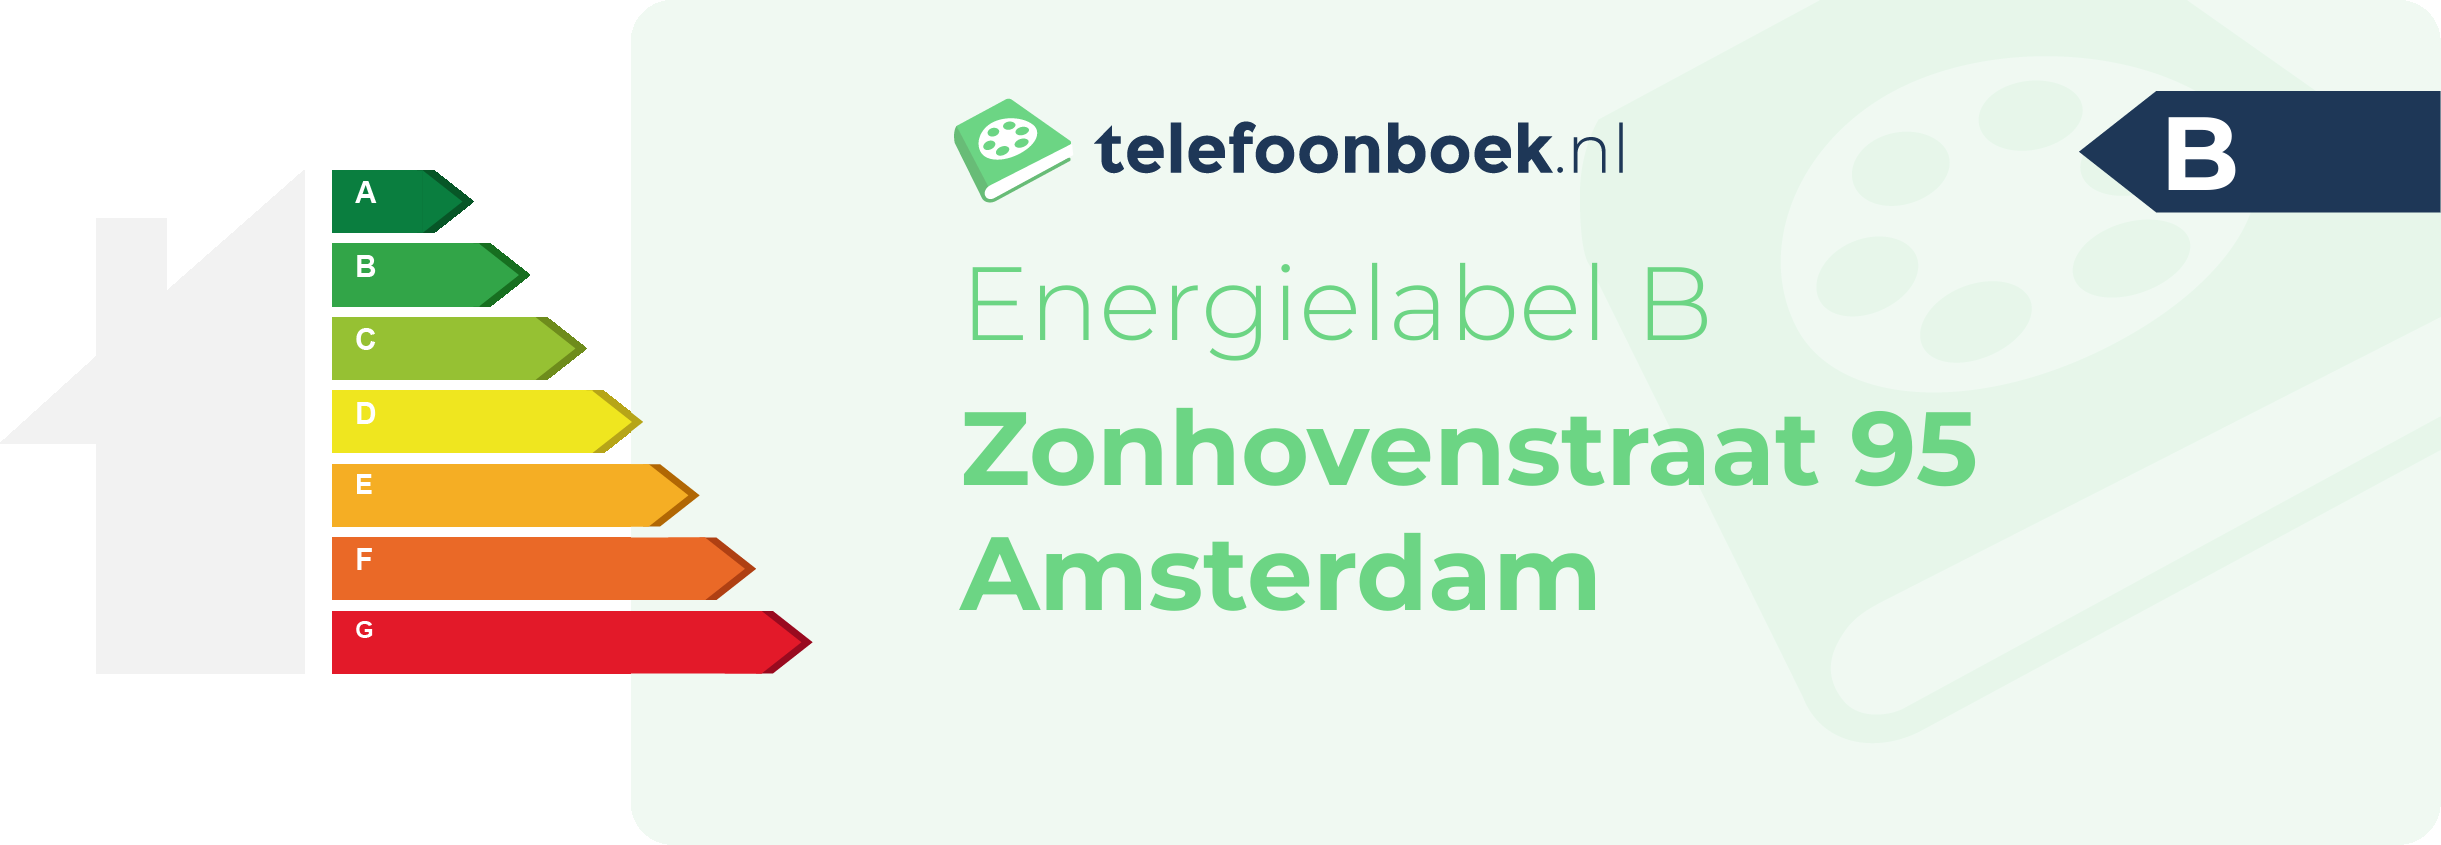 Energielabel Zonhovenstraat 95 Amsterdam